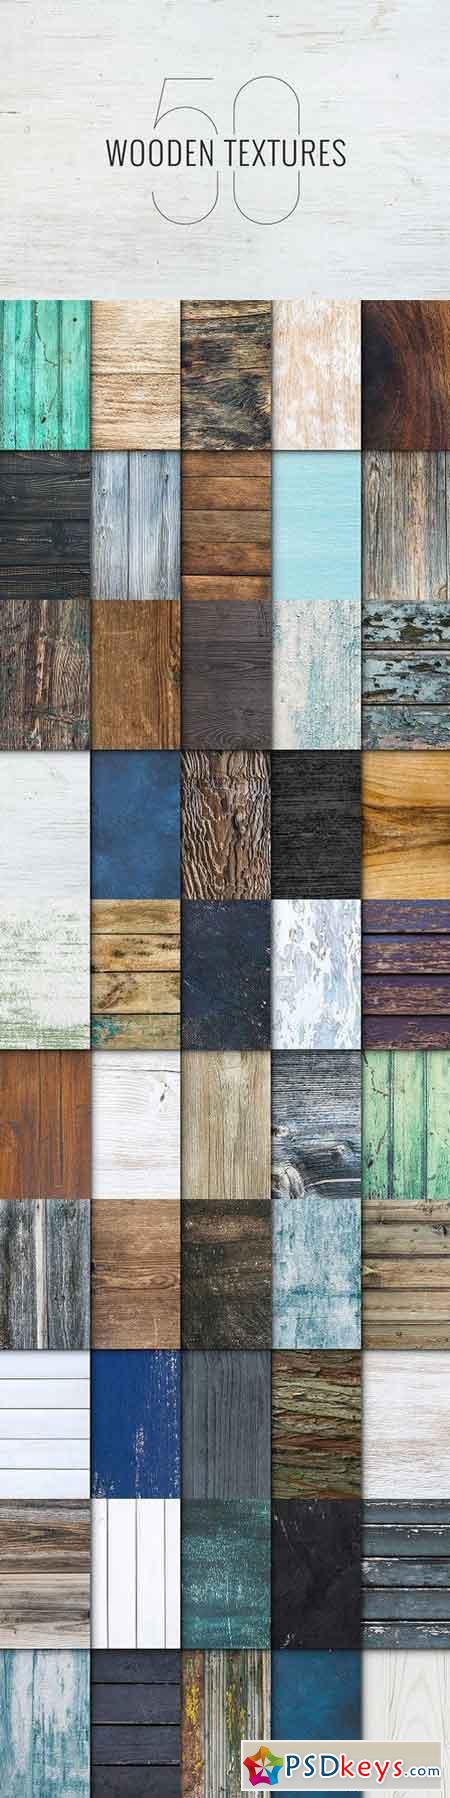 50 Wooden Textures 1268906